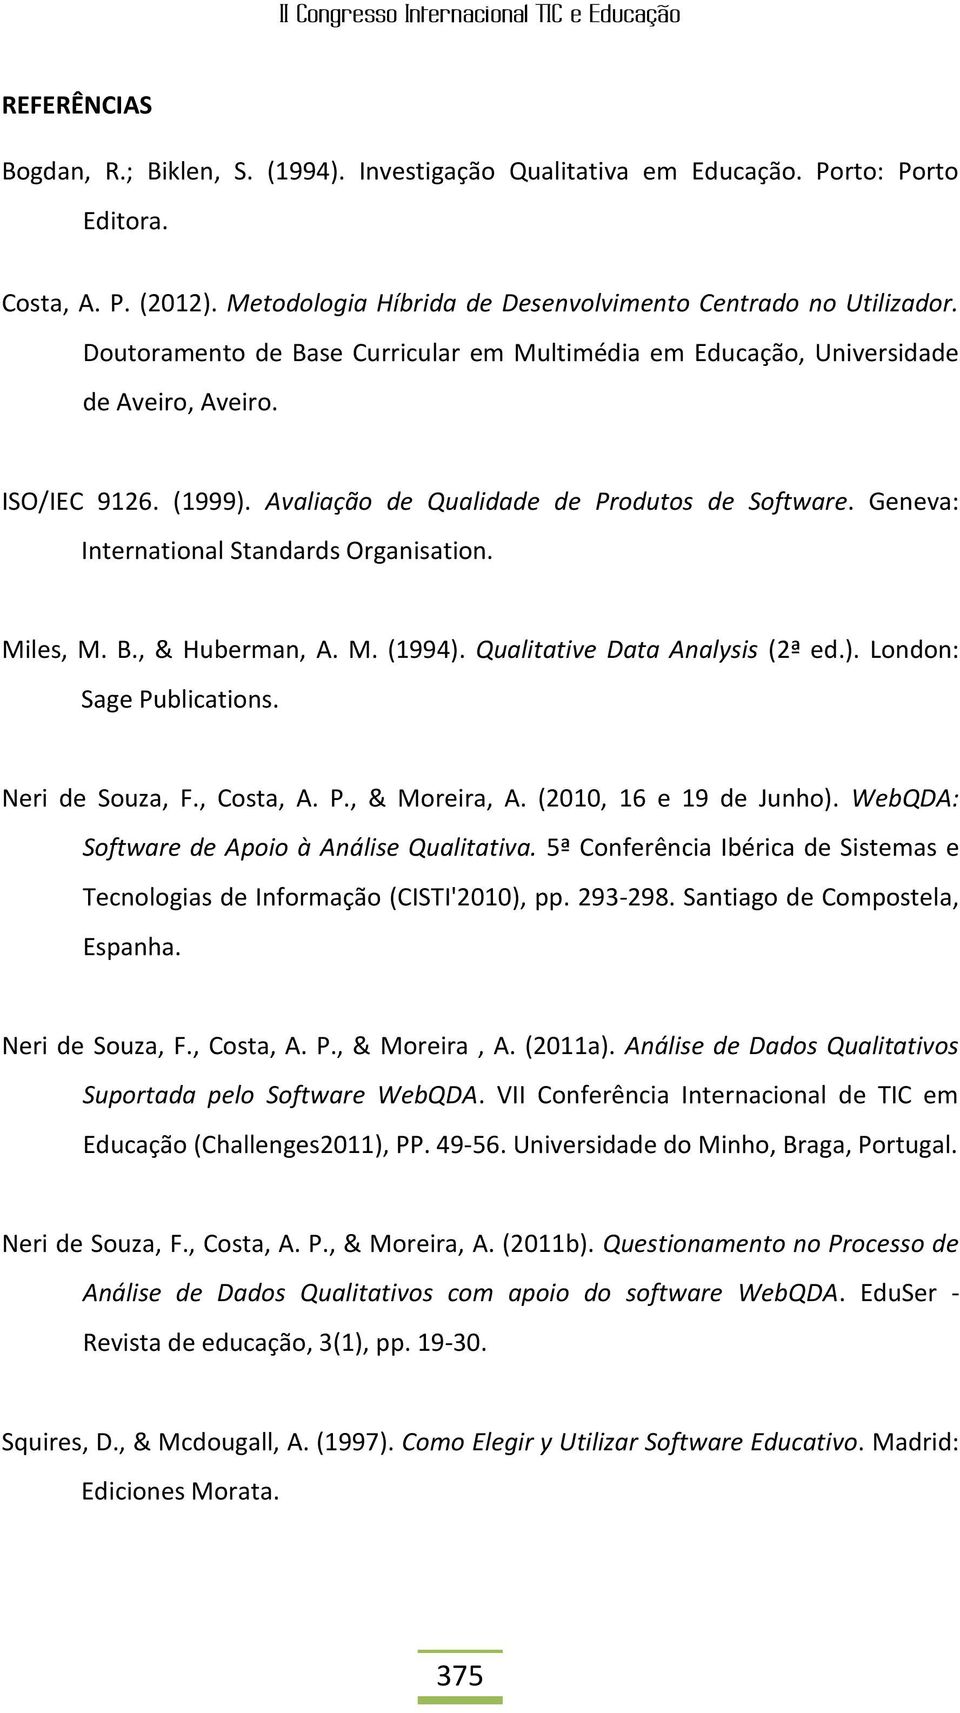 M. (1994). Qualitativ Data Analysis (2ª d.). London: Sag Publications. Nri d Souza, F., Costa, A. P., & Morira, A. (2010, 16 19 d Junho). WbQDA: Softwar d Apoio à Anális Qualitativa.